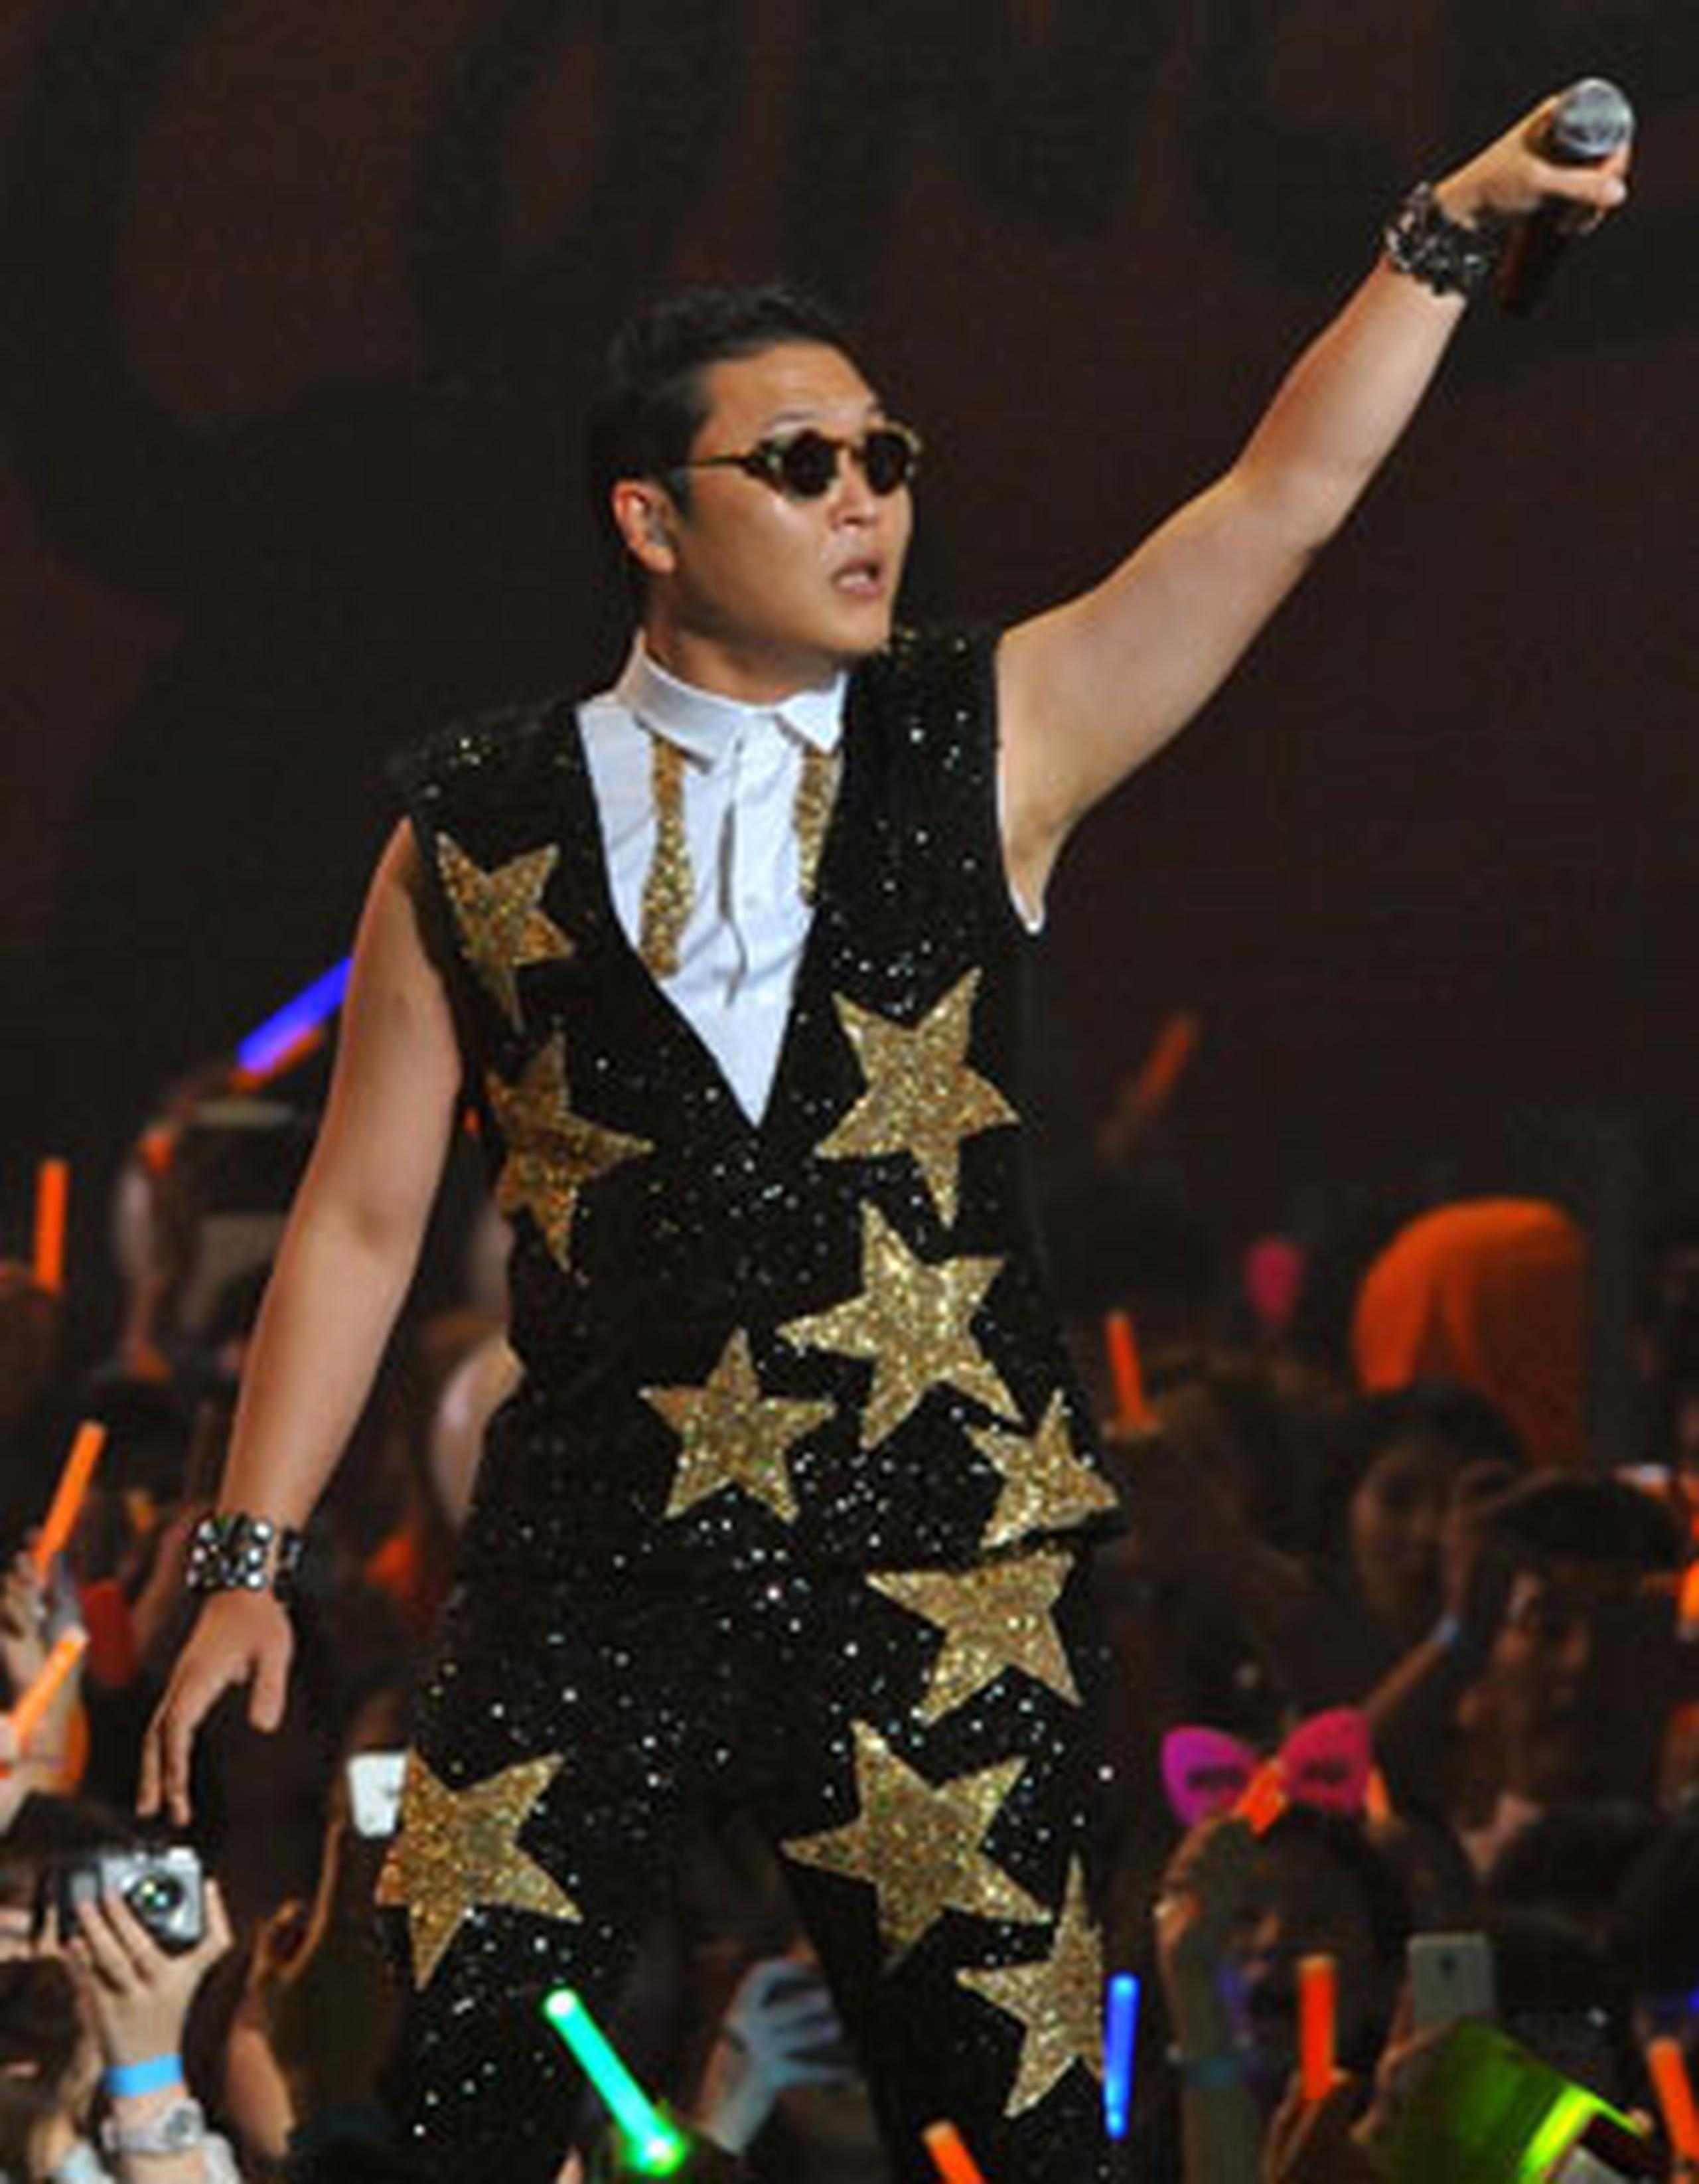 Ningún vídeo se acerca al "Gangnam" en la lista de los más solicitados en internet.
